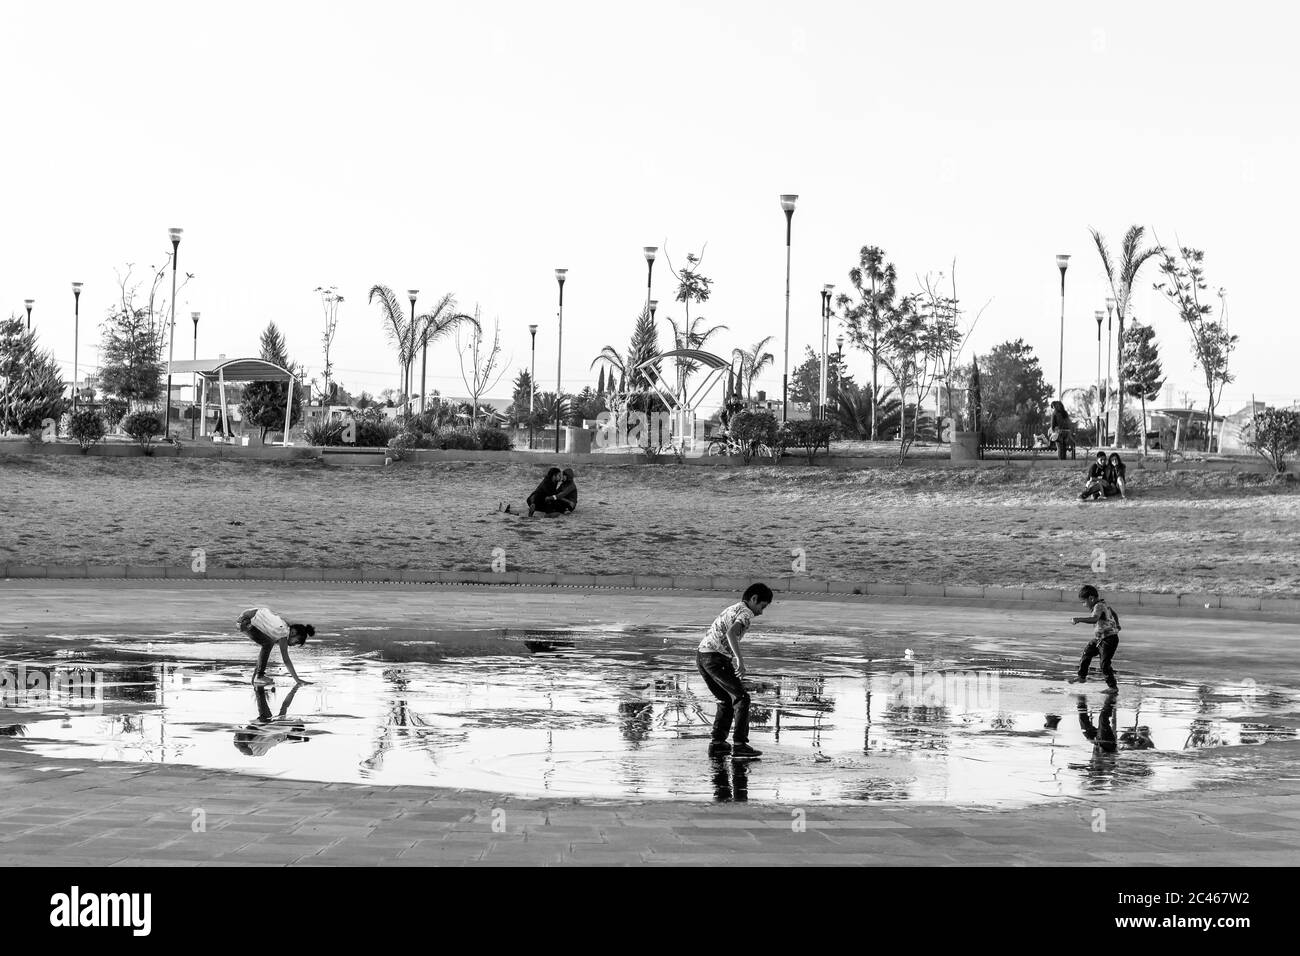 MEXICO, MEXICO - Feb 21, 2019: Niños jugando con agua en el parque Stock Photo